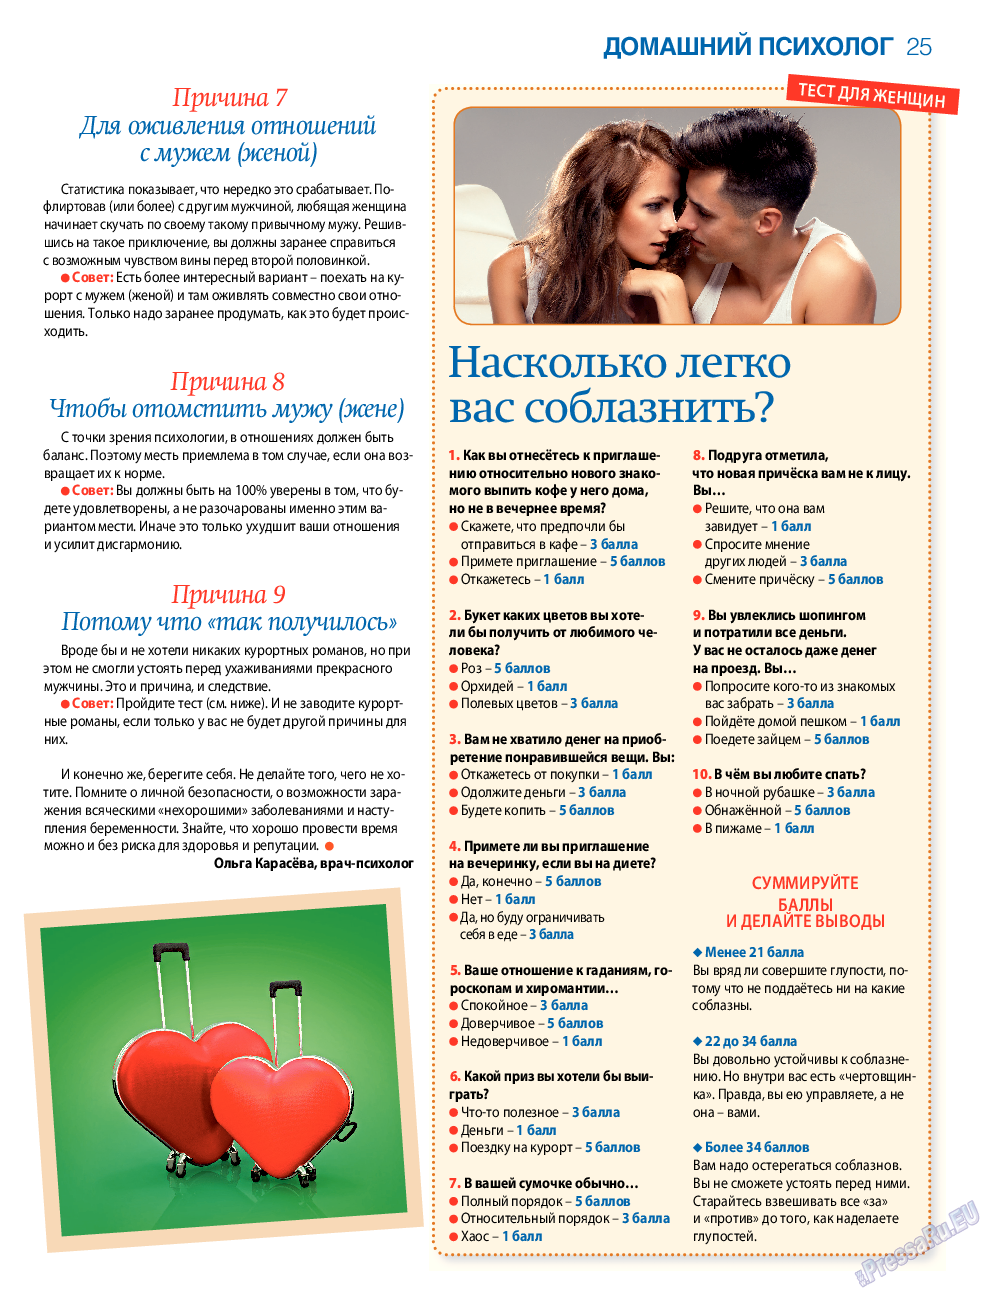 7плюс7я, журнал. 2015 №34 стр.25